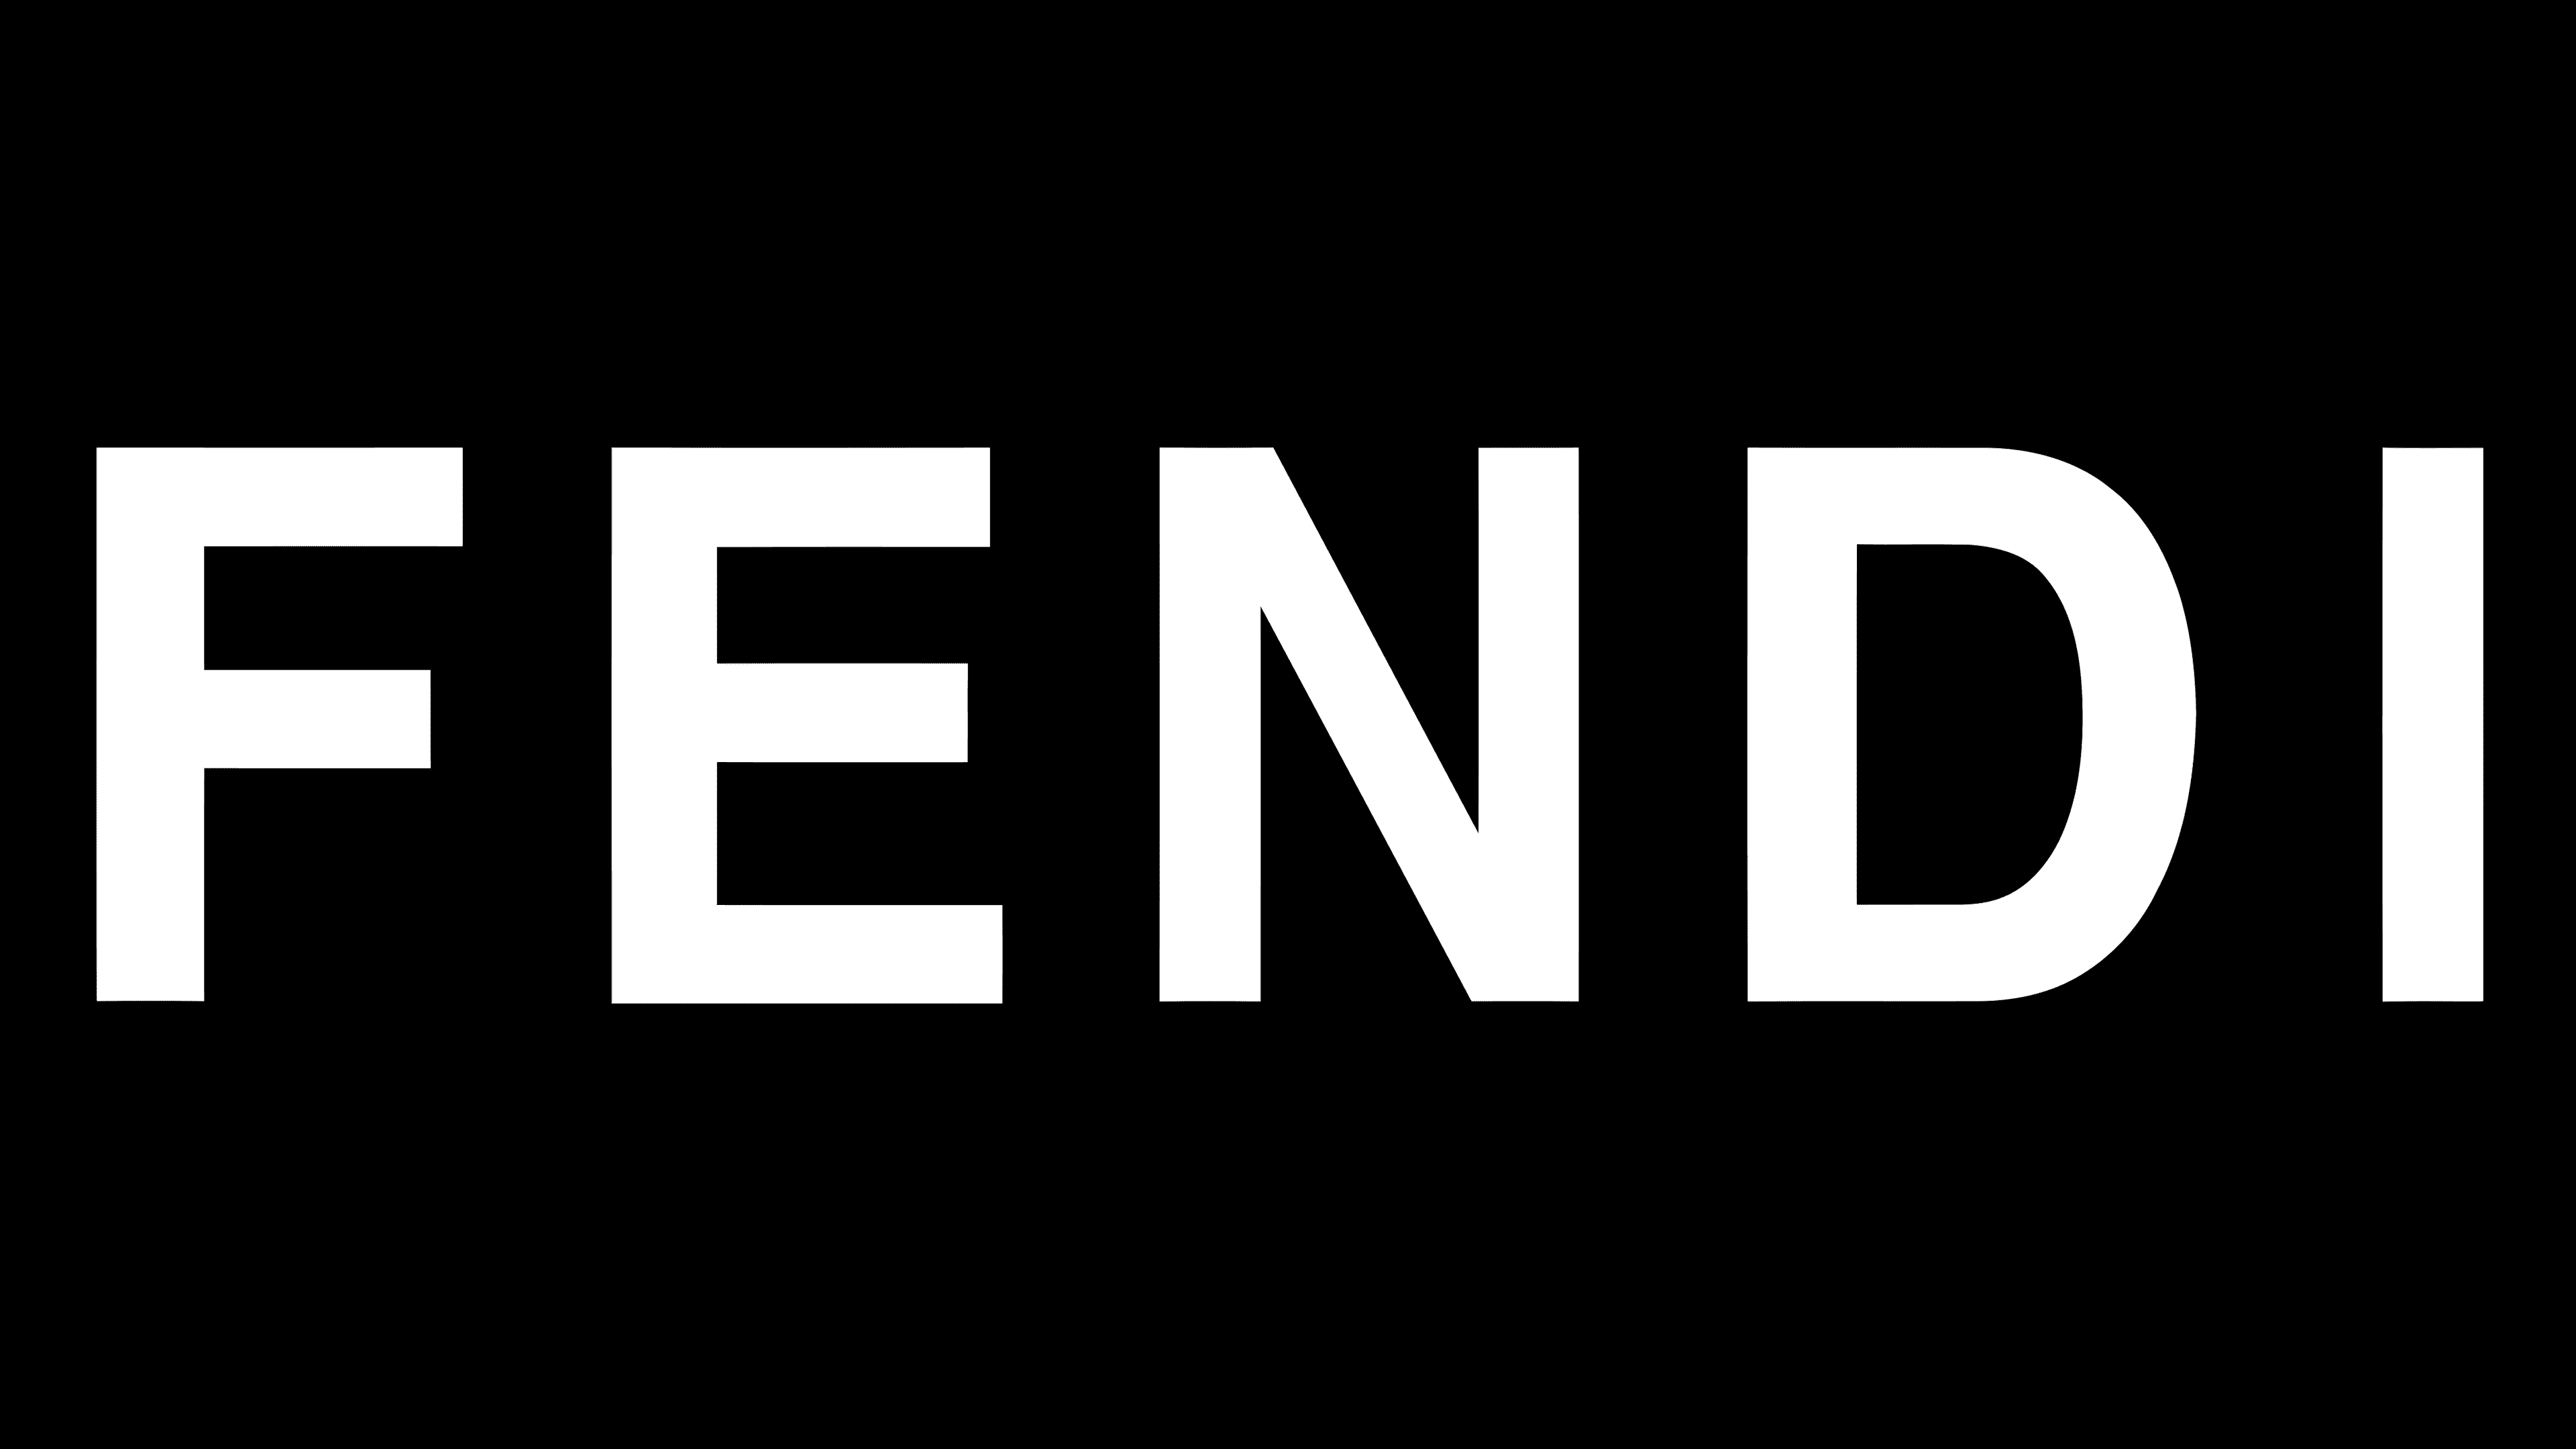 Fendi Logos  Fendi, Fendi logo, Fendi logo wallpaper